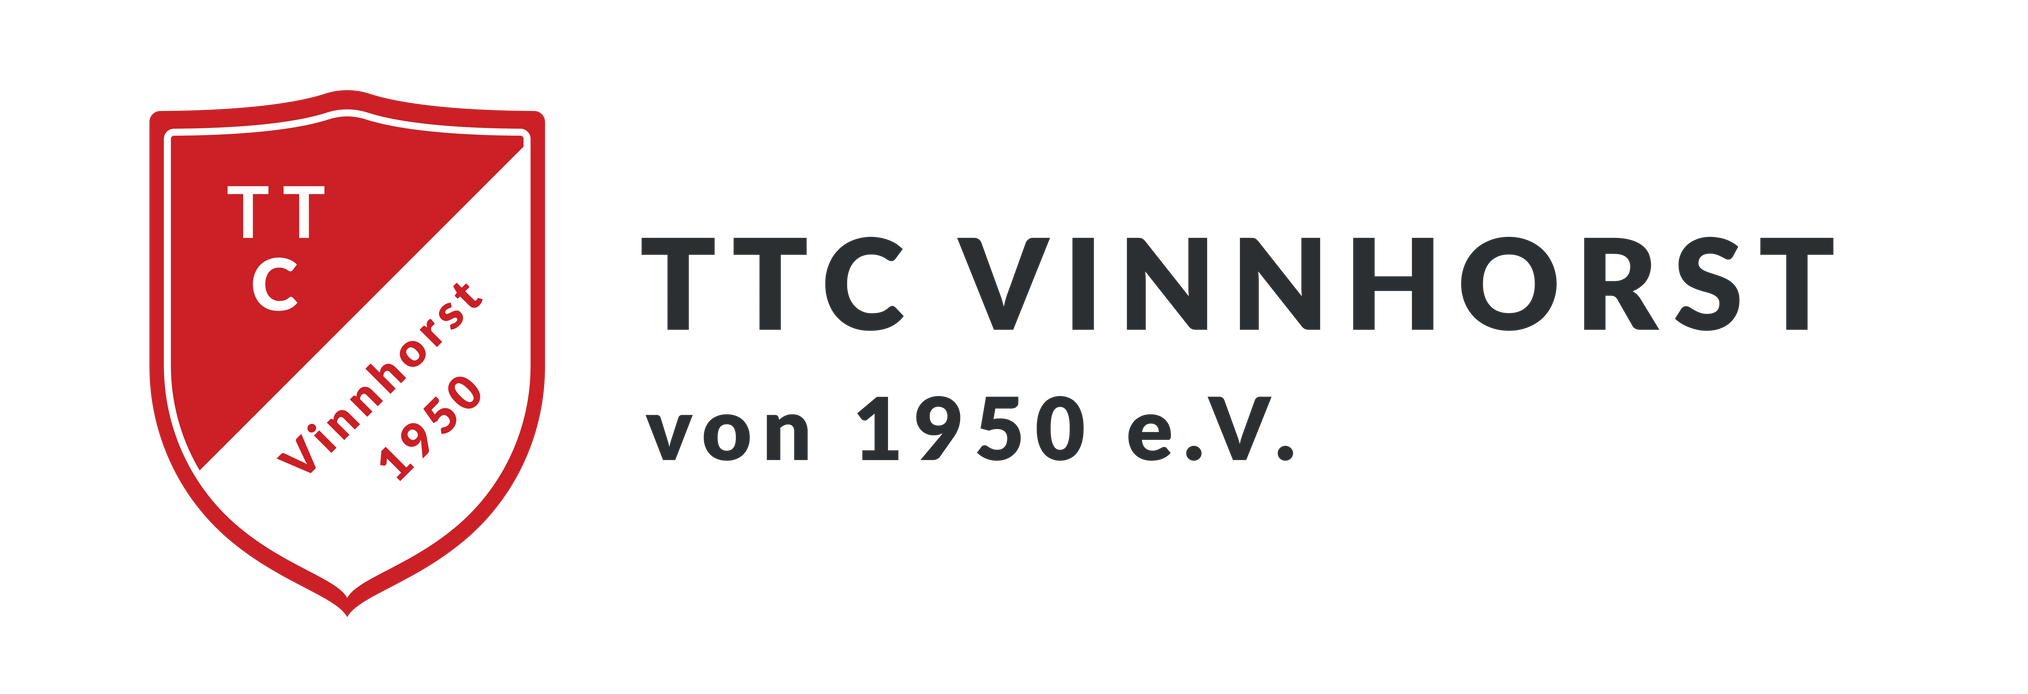 Logo und Vereinsname vom TTC Vinnhorst